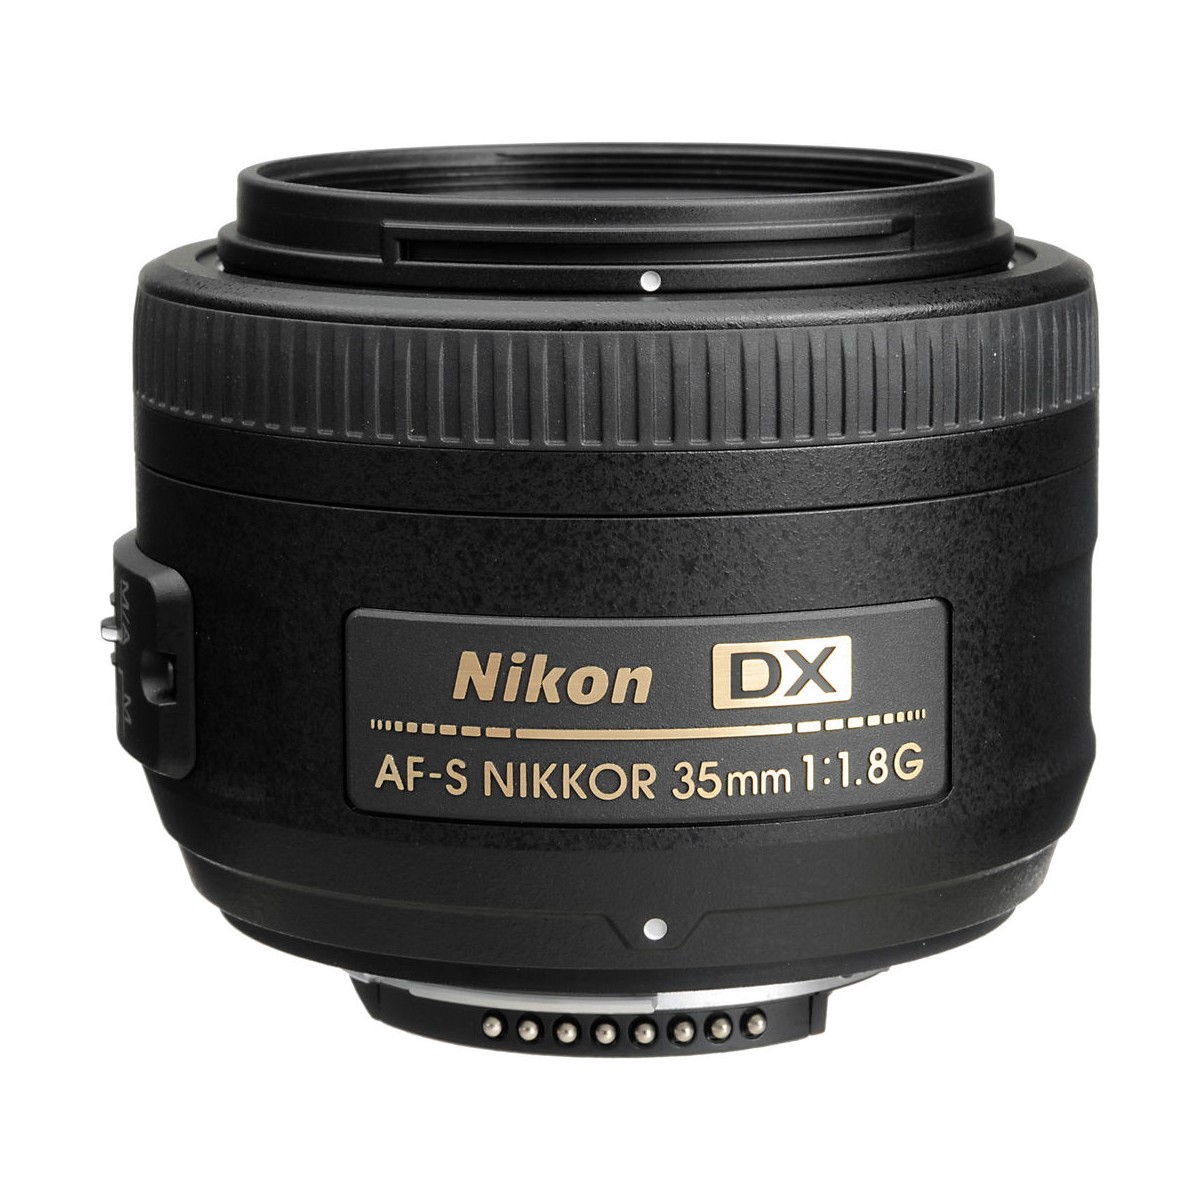 Nikon DX AF-S NIKKOR 35mm F1.8G - レンズ(単焦点)